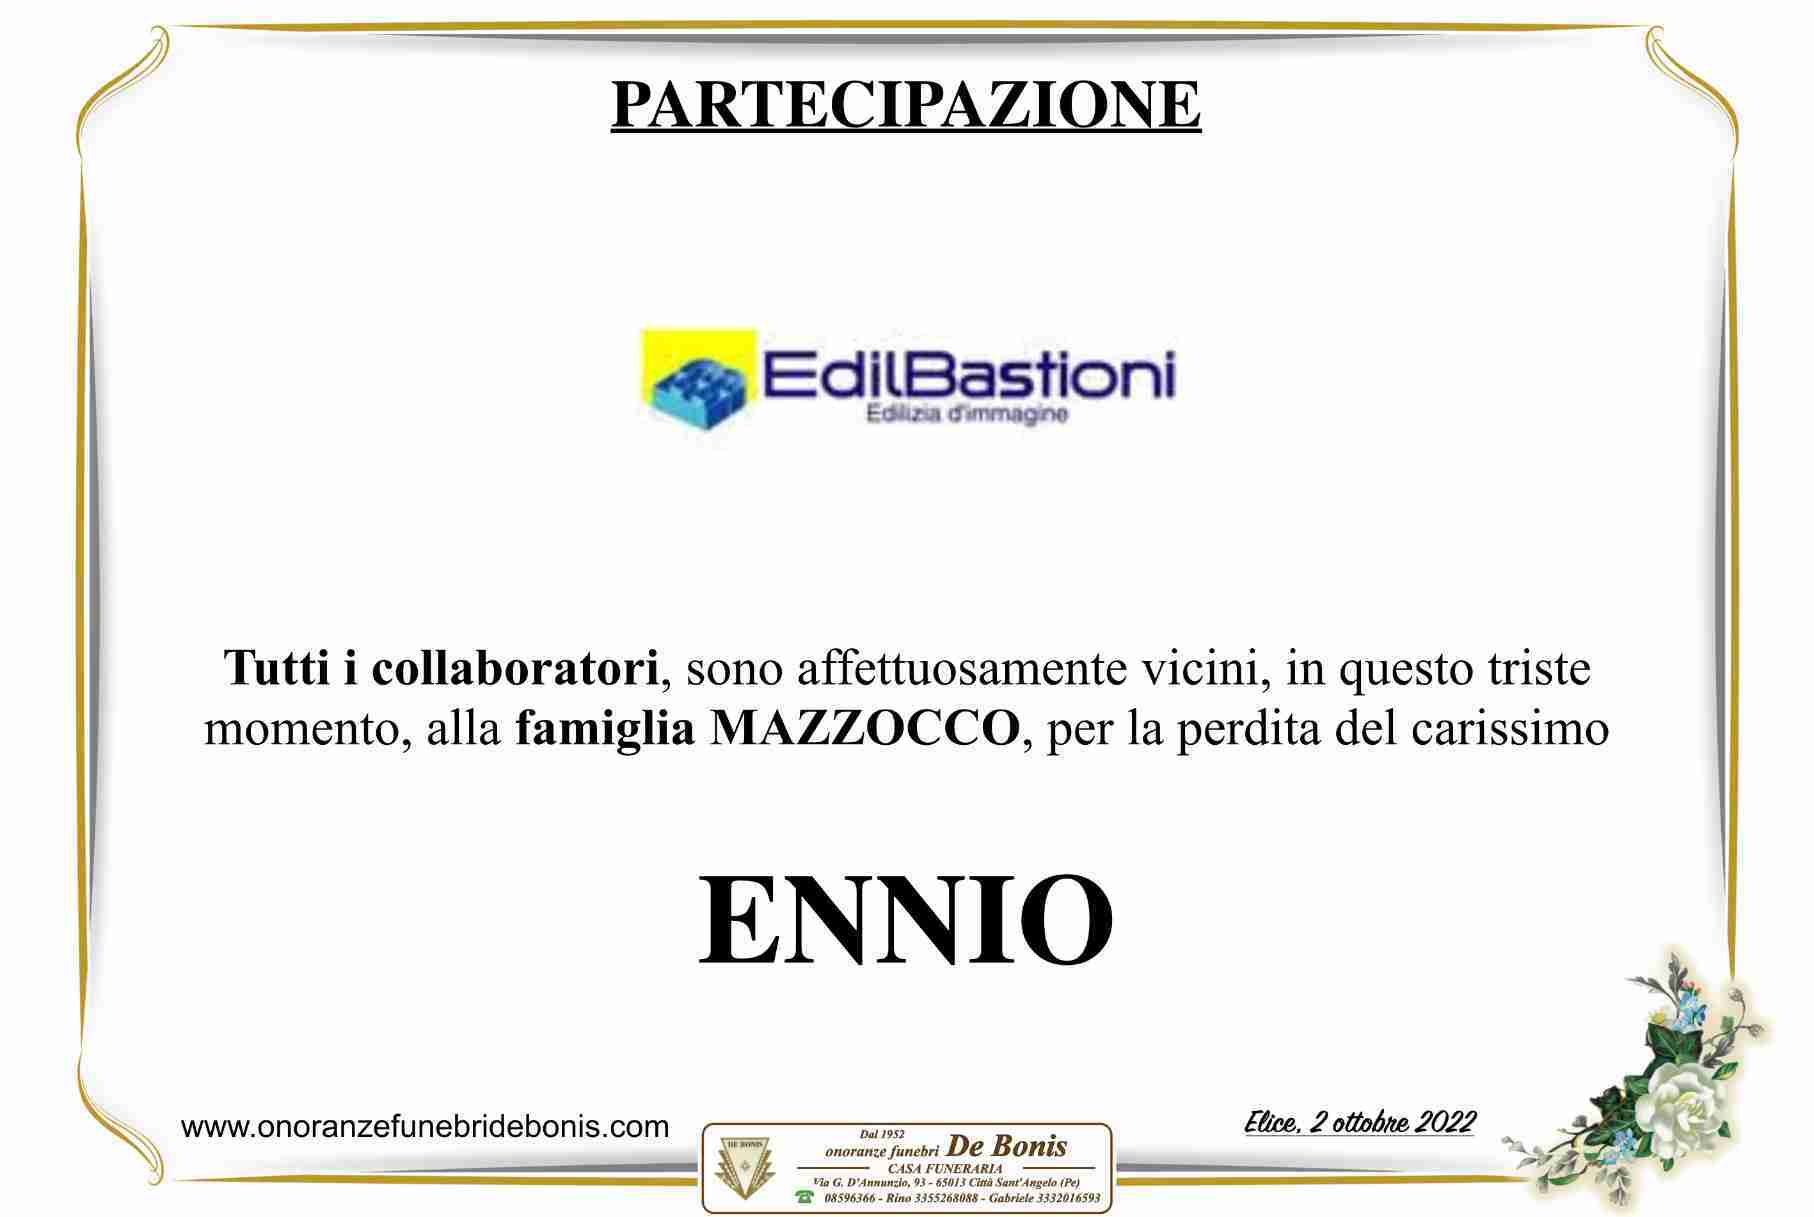 Ennio Mazzocco